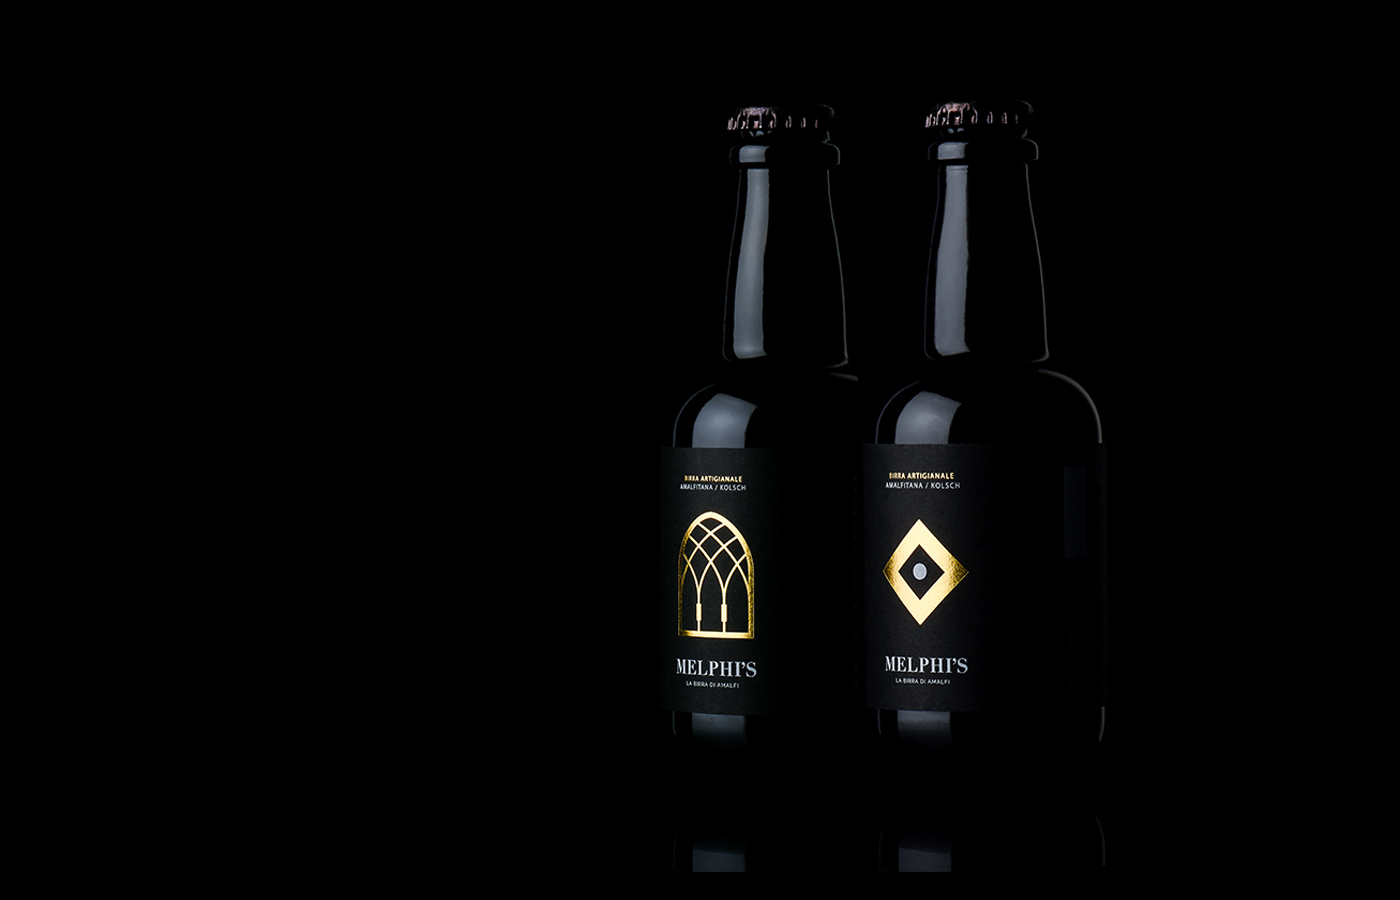 mejor_packaging_cerveza_Melphi_beer_02